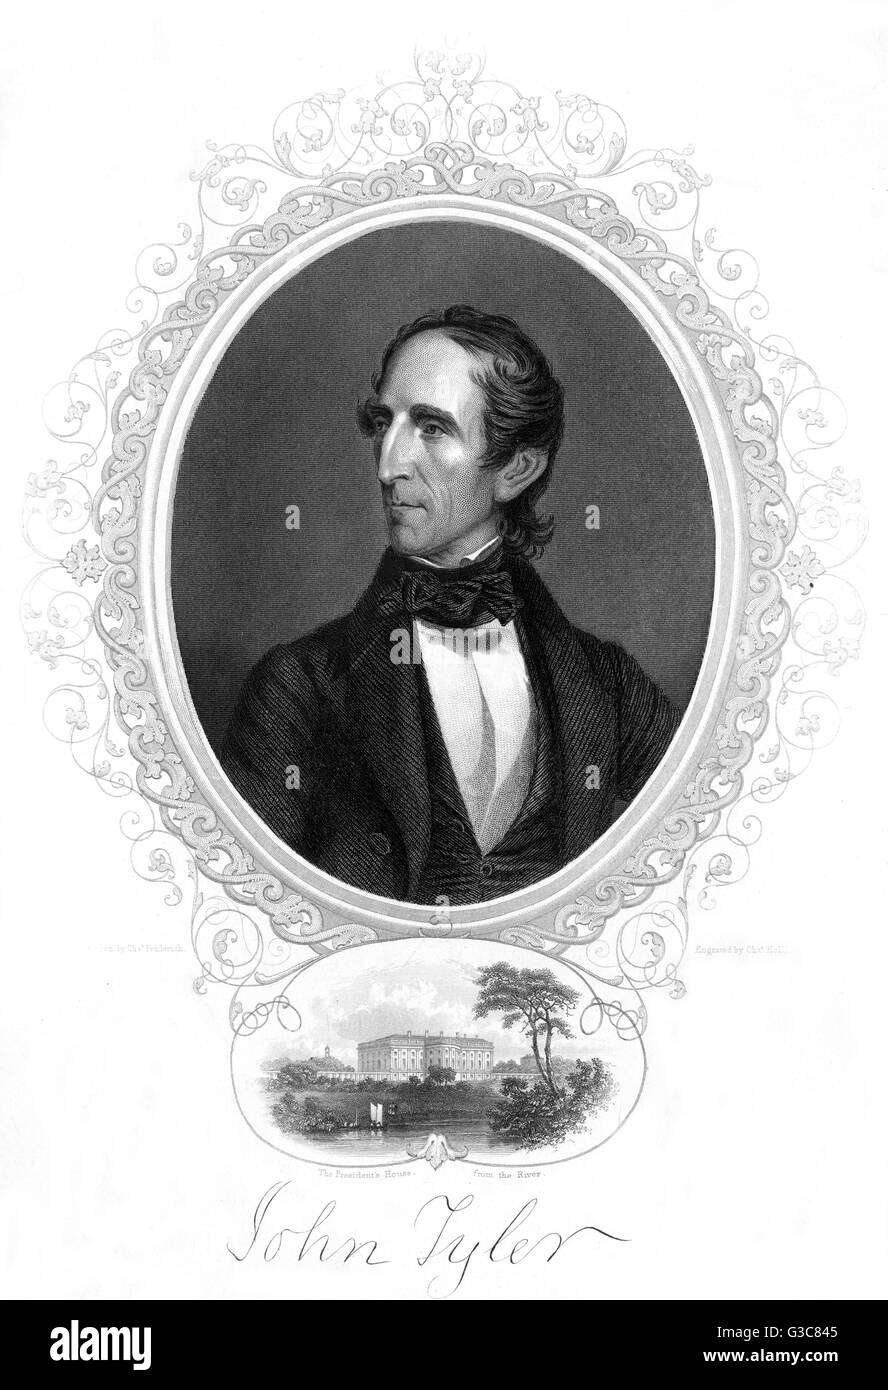 JOHN TYLER Präsident der Vereinigten Staaten Datum: 1790-1862 Stockfoto